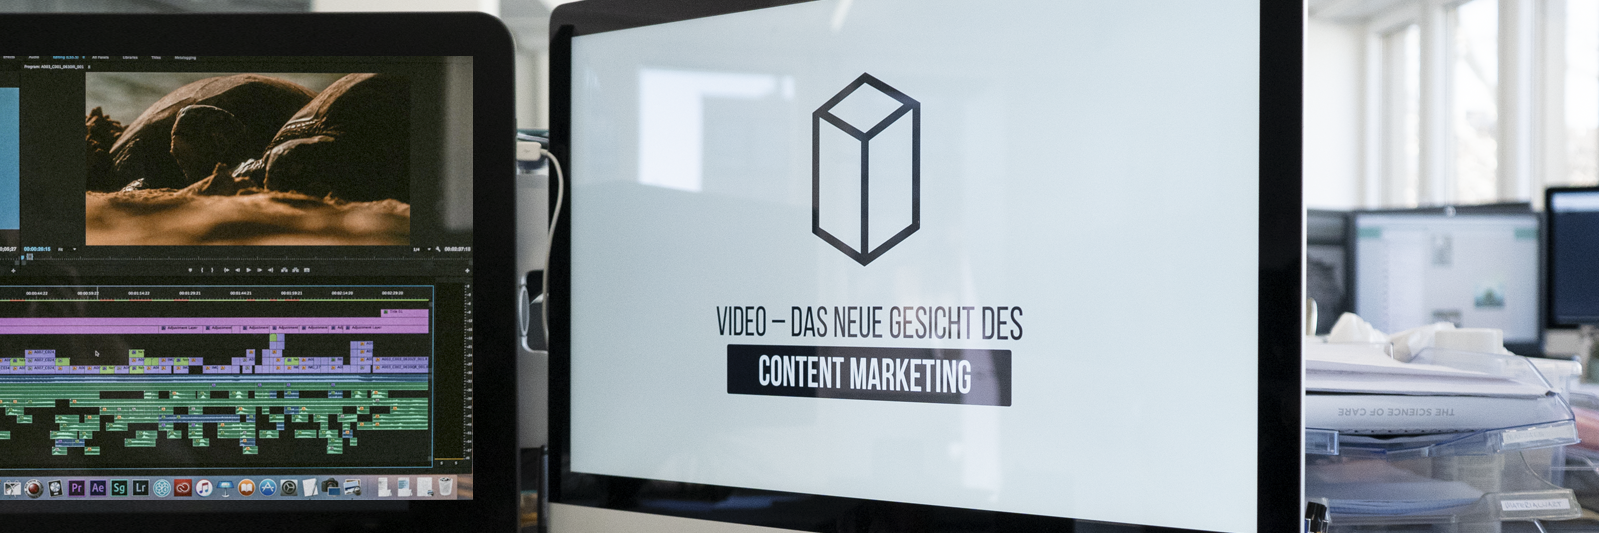 5 GrÃ¼nde, warum sich Video Content Marketing lohnt - Yoveo AG - 